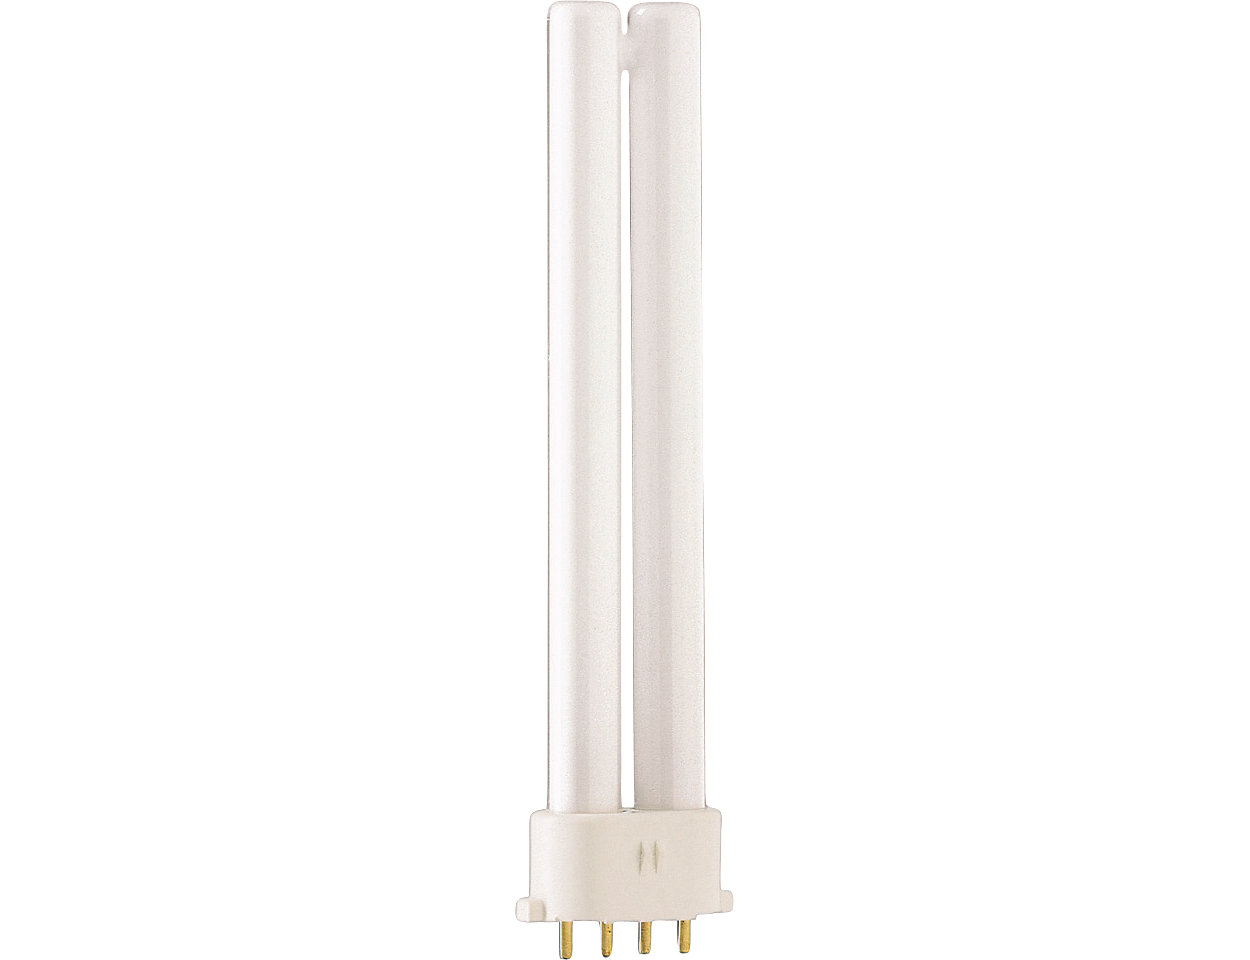 UVB Narrowband PL-L/PL-S – максимально эффективная лампа для фототерапии представляет собой удобное дизайнерское решение